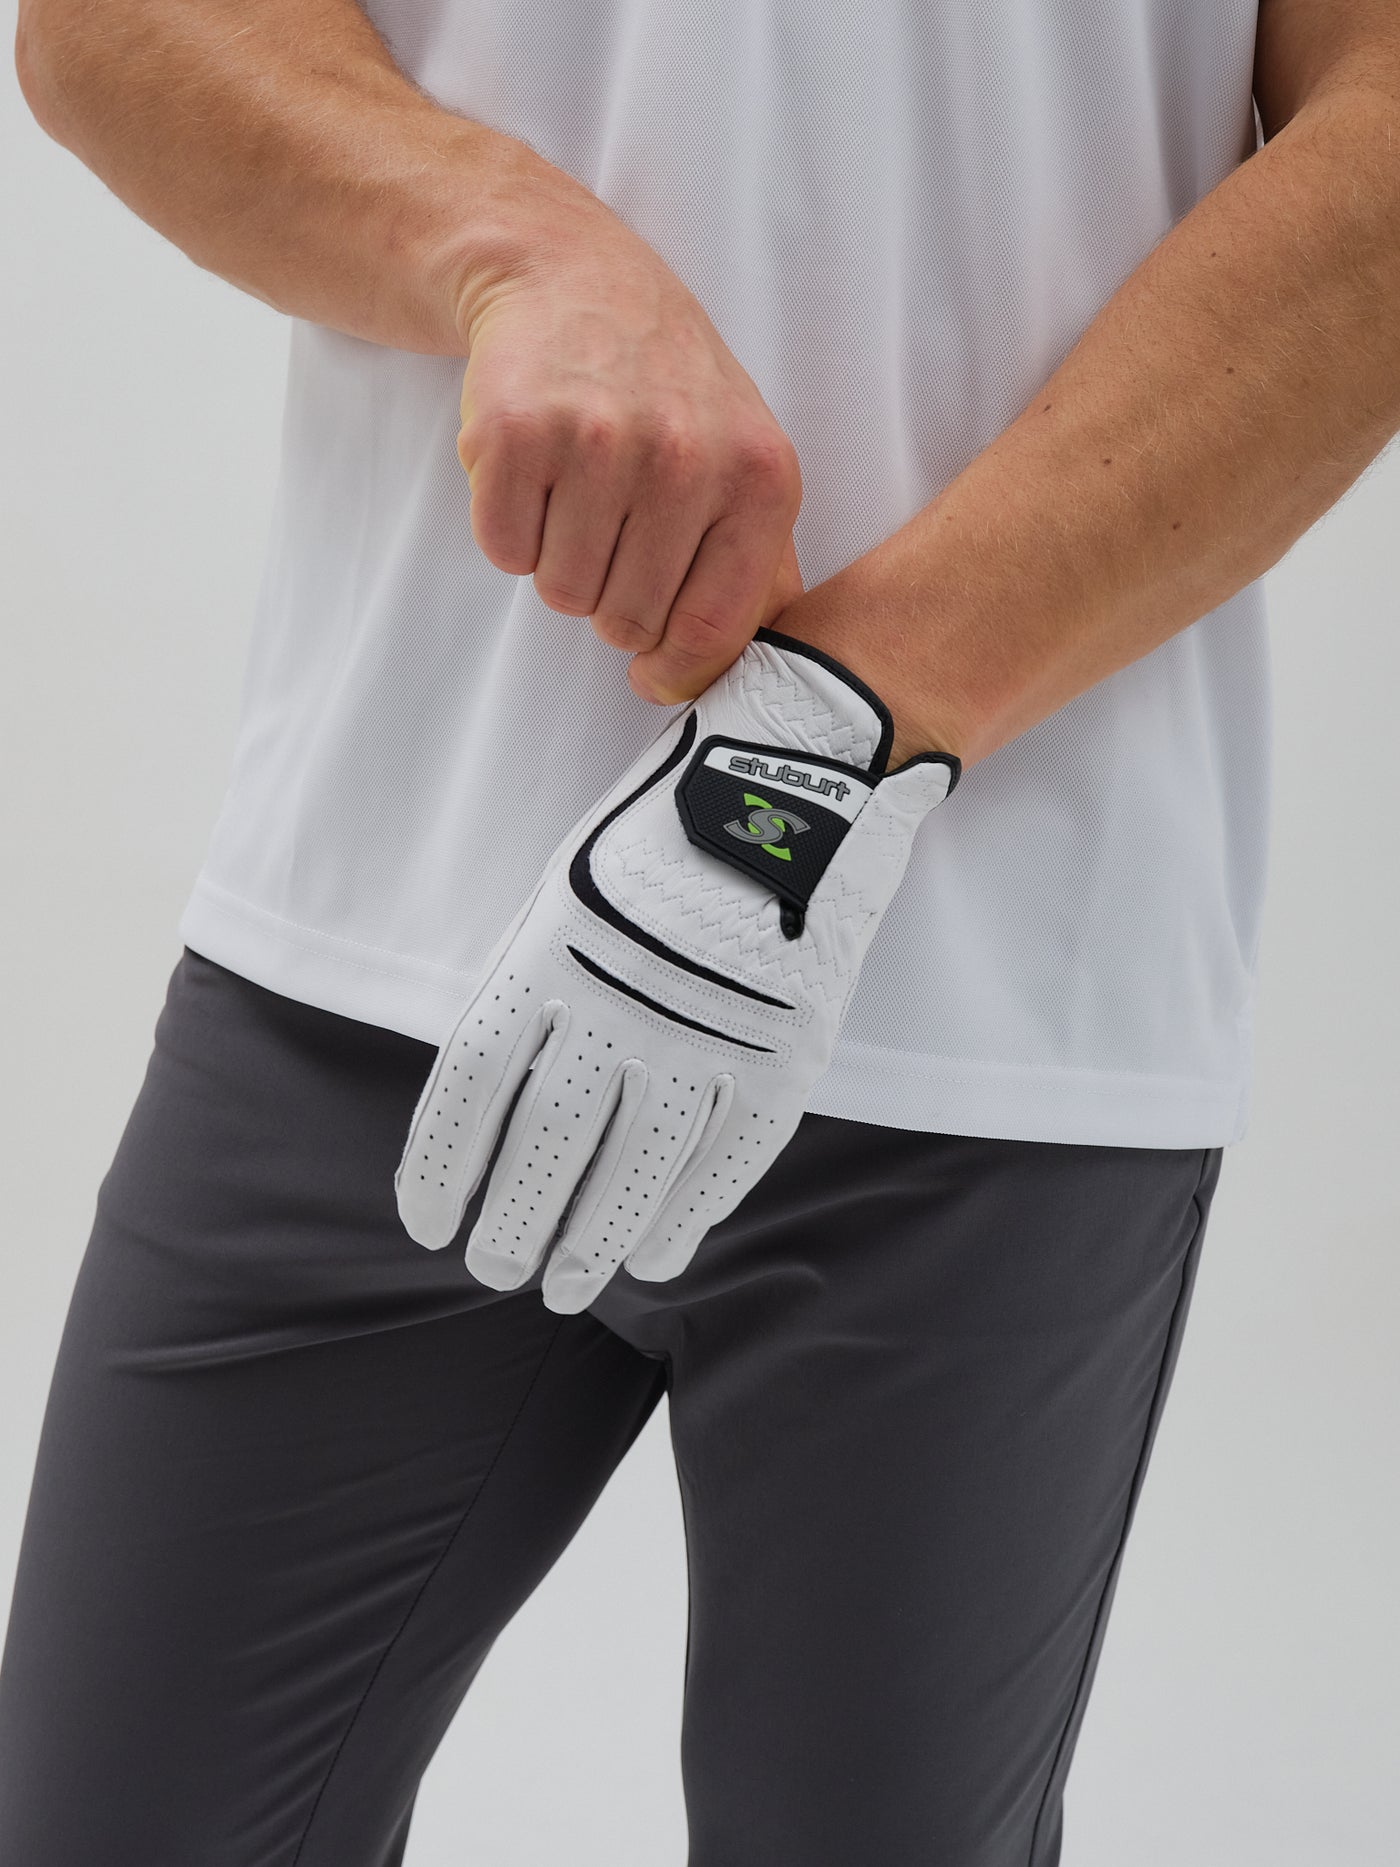 Men's Urban Leather Golf Glove.